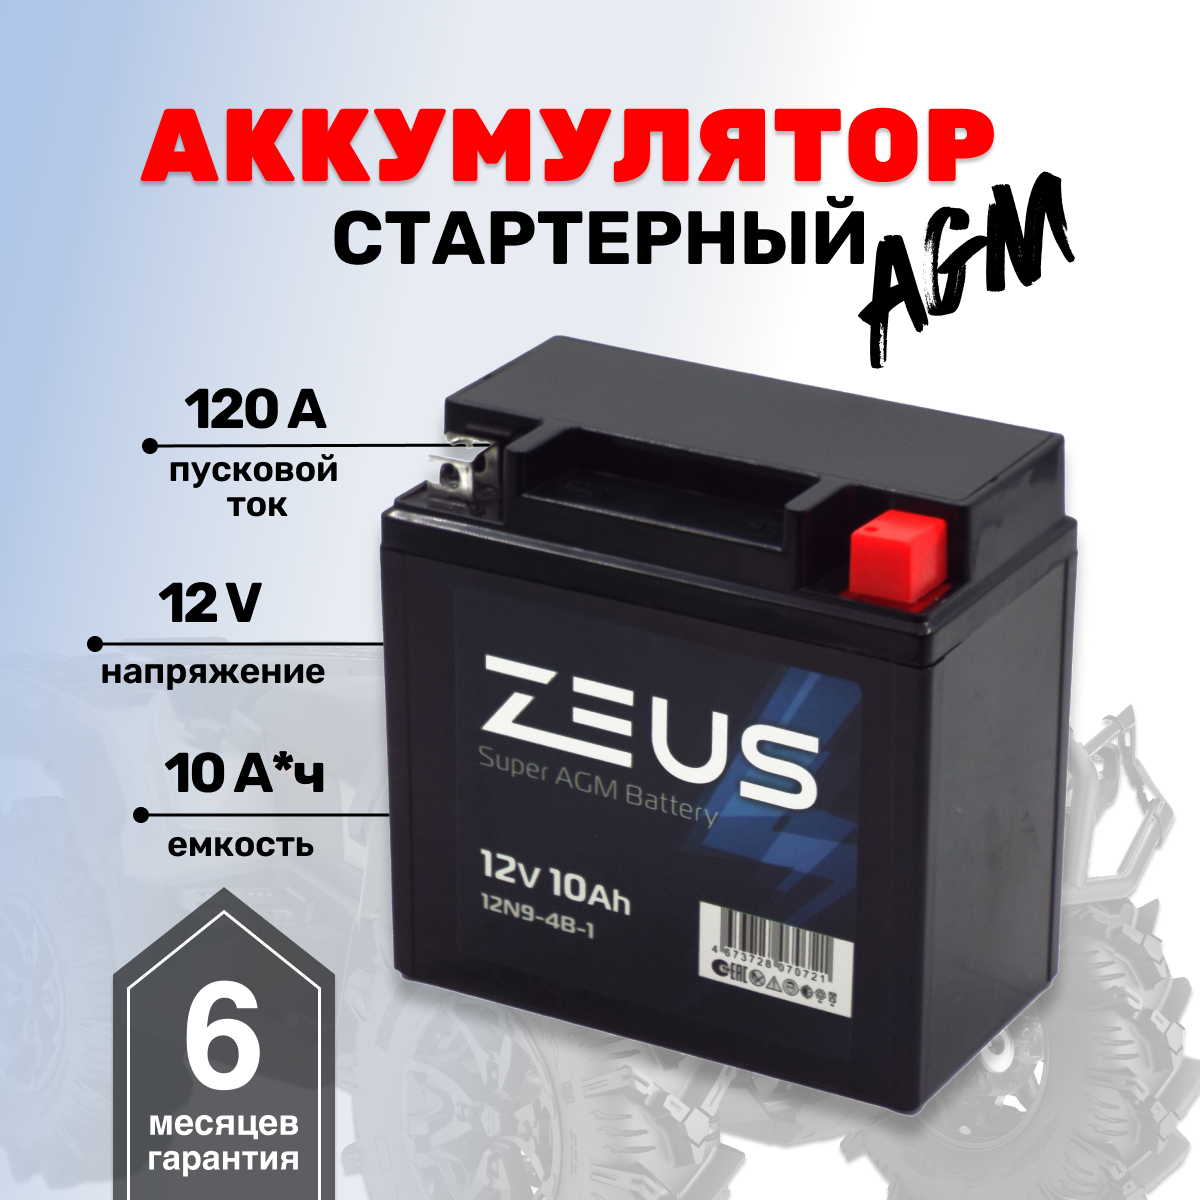 Аккумулятор ZEUS SUPER AGM 10 А*ч Обратная полярность (12N9-4B-1/12N9-3B)